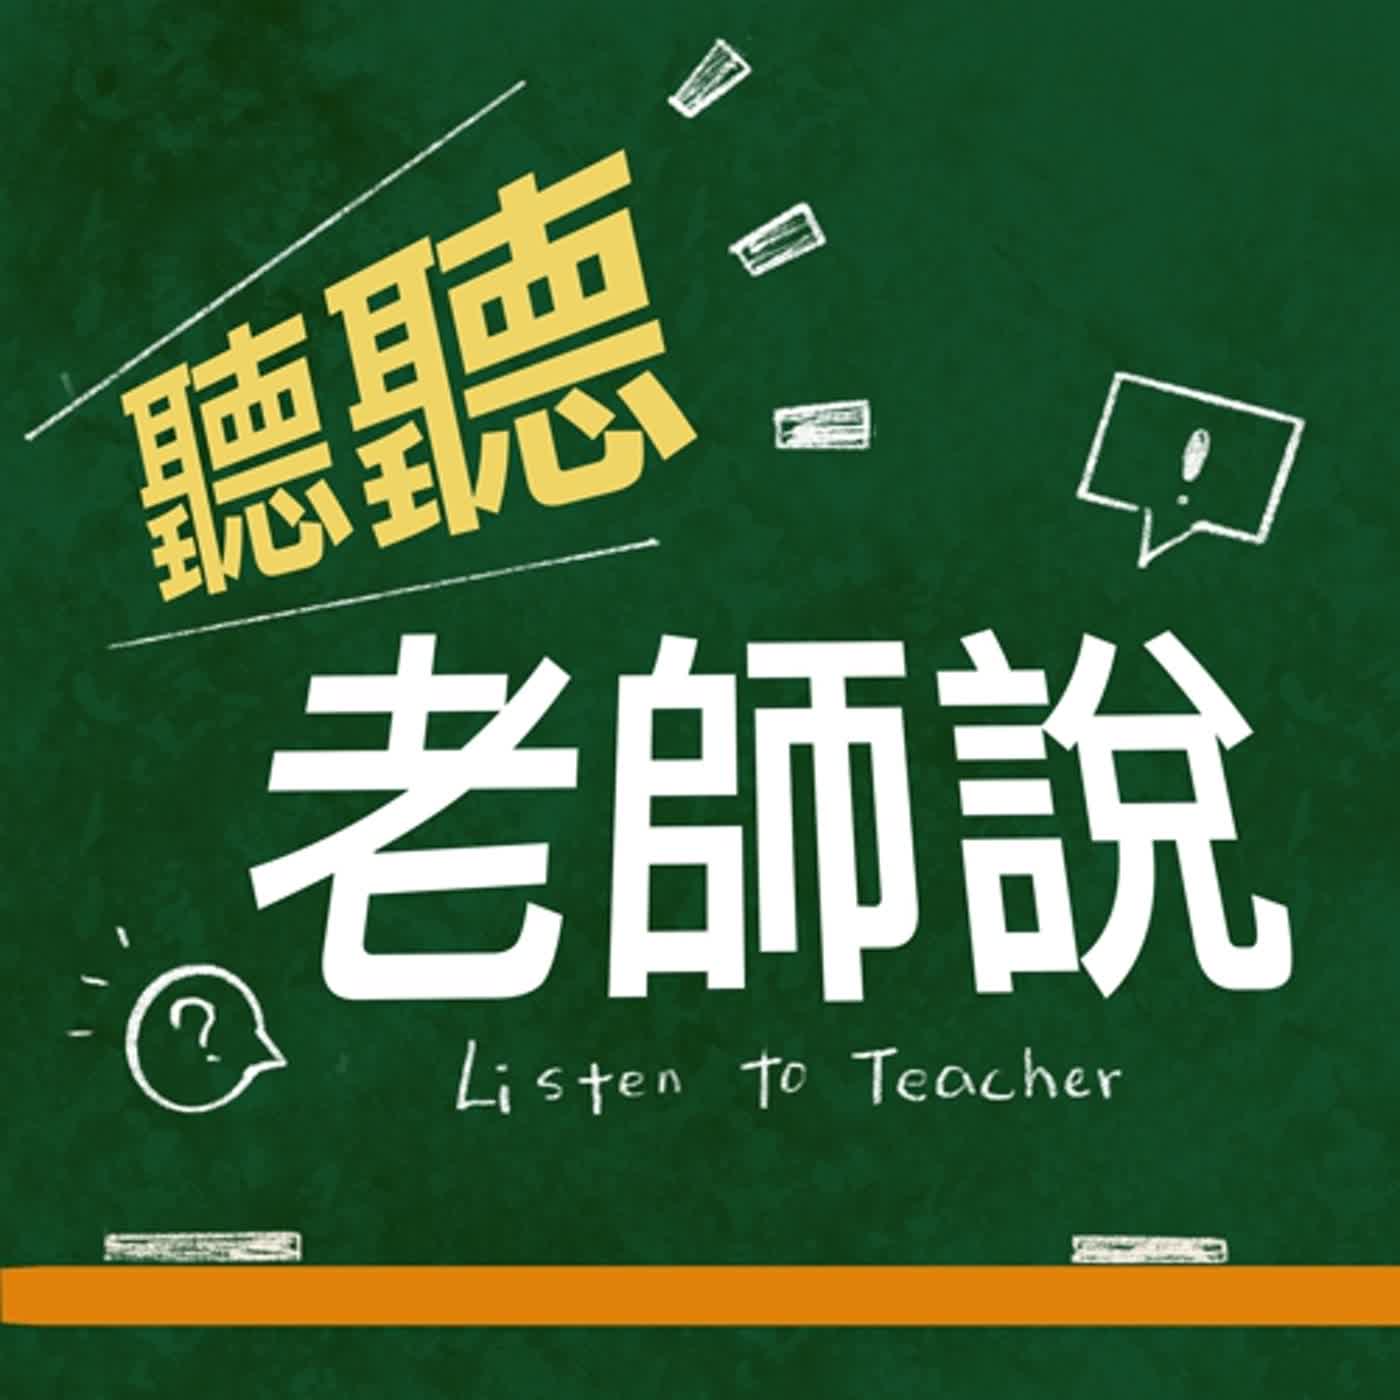 特教老師需要甚麼樣的條件跟技能呢？聽聽蘋果老師跟我們分享吧！